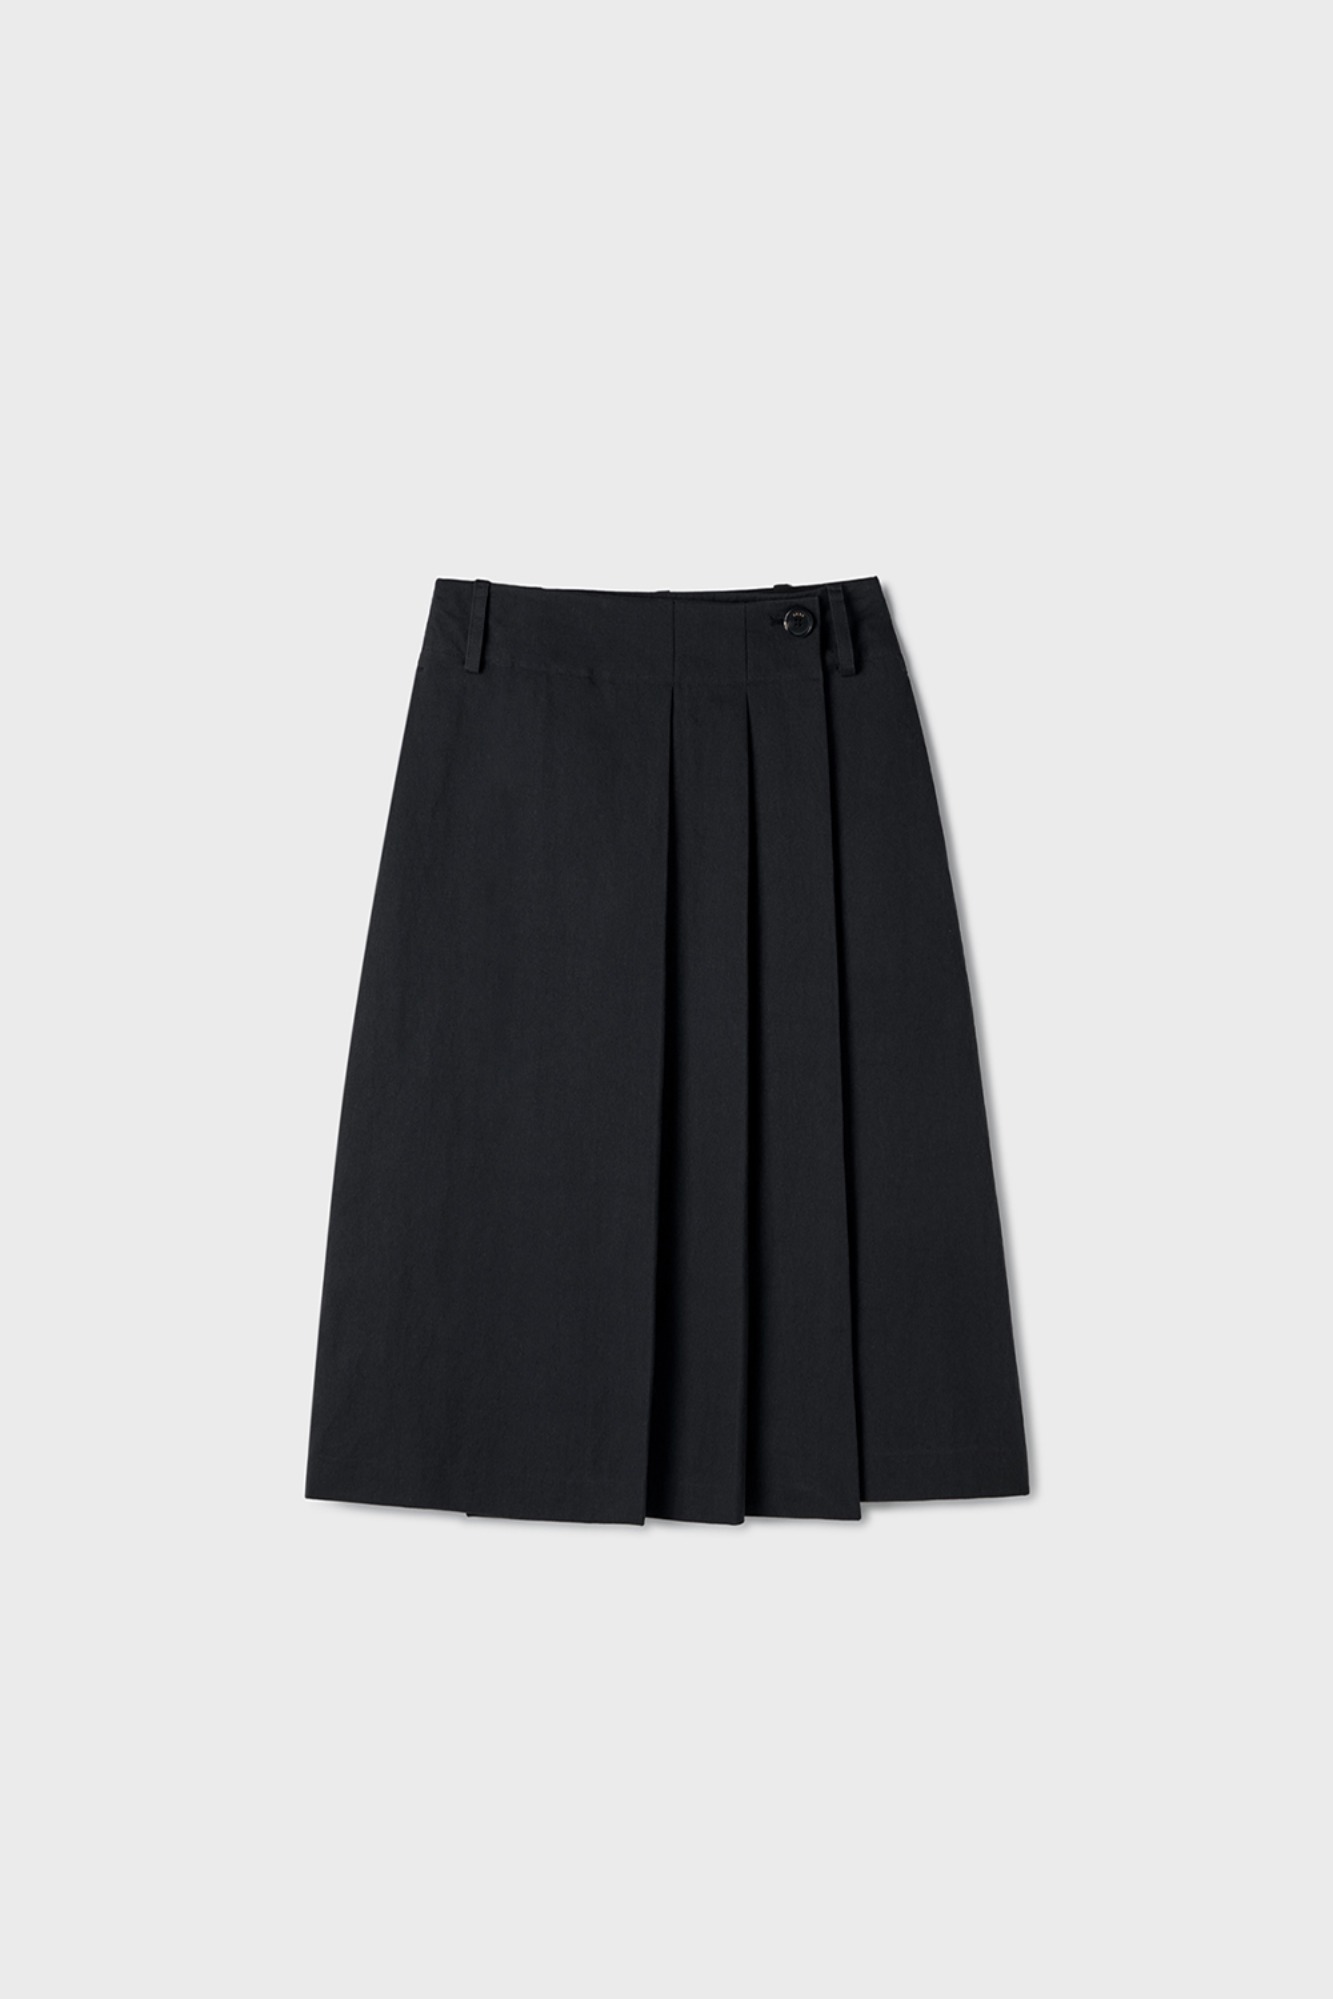 Rian Pleats Midi Skirt